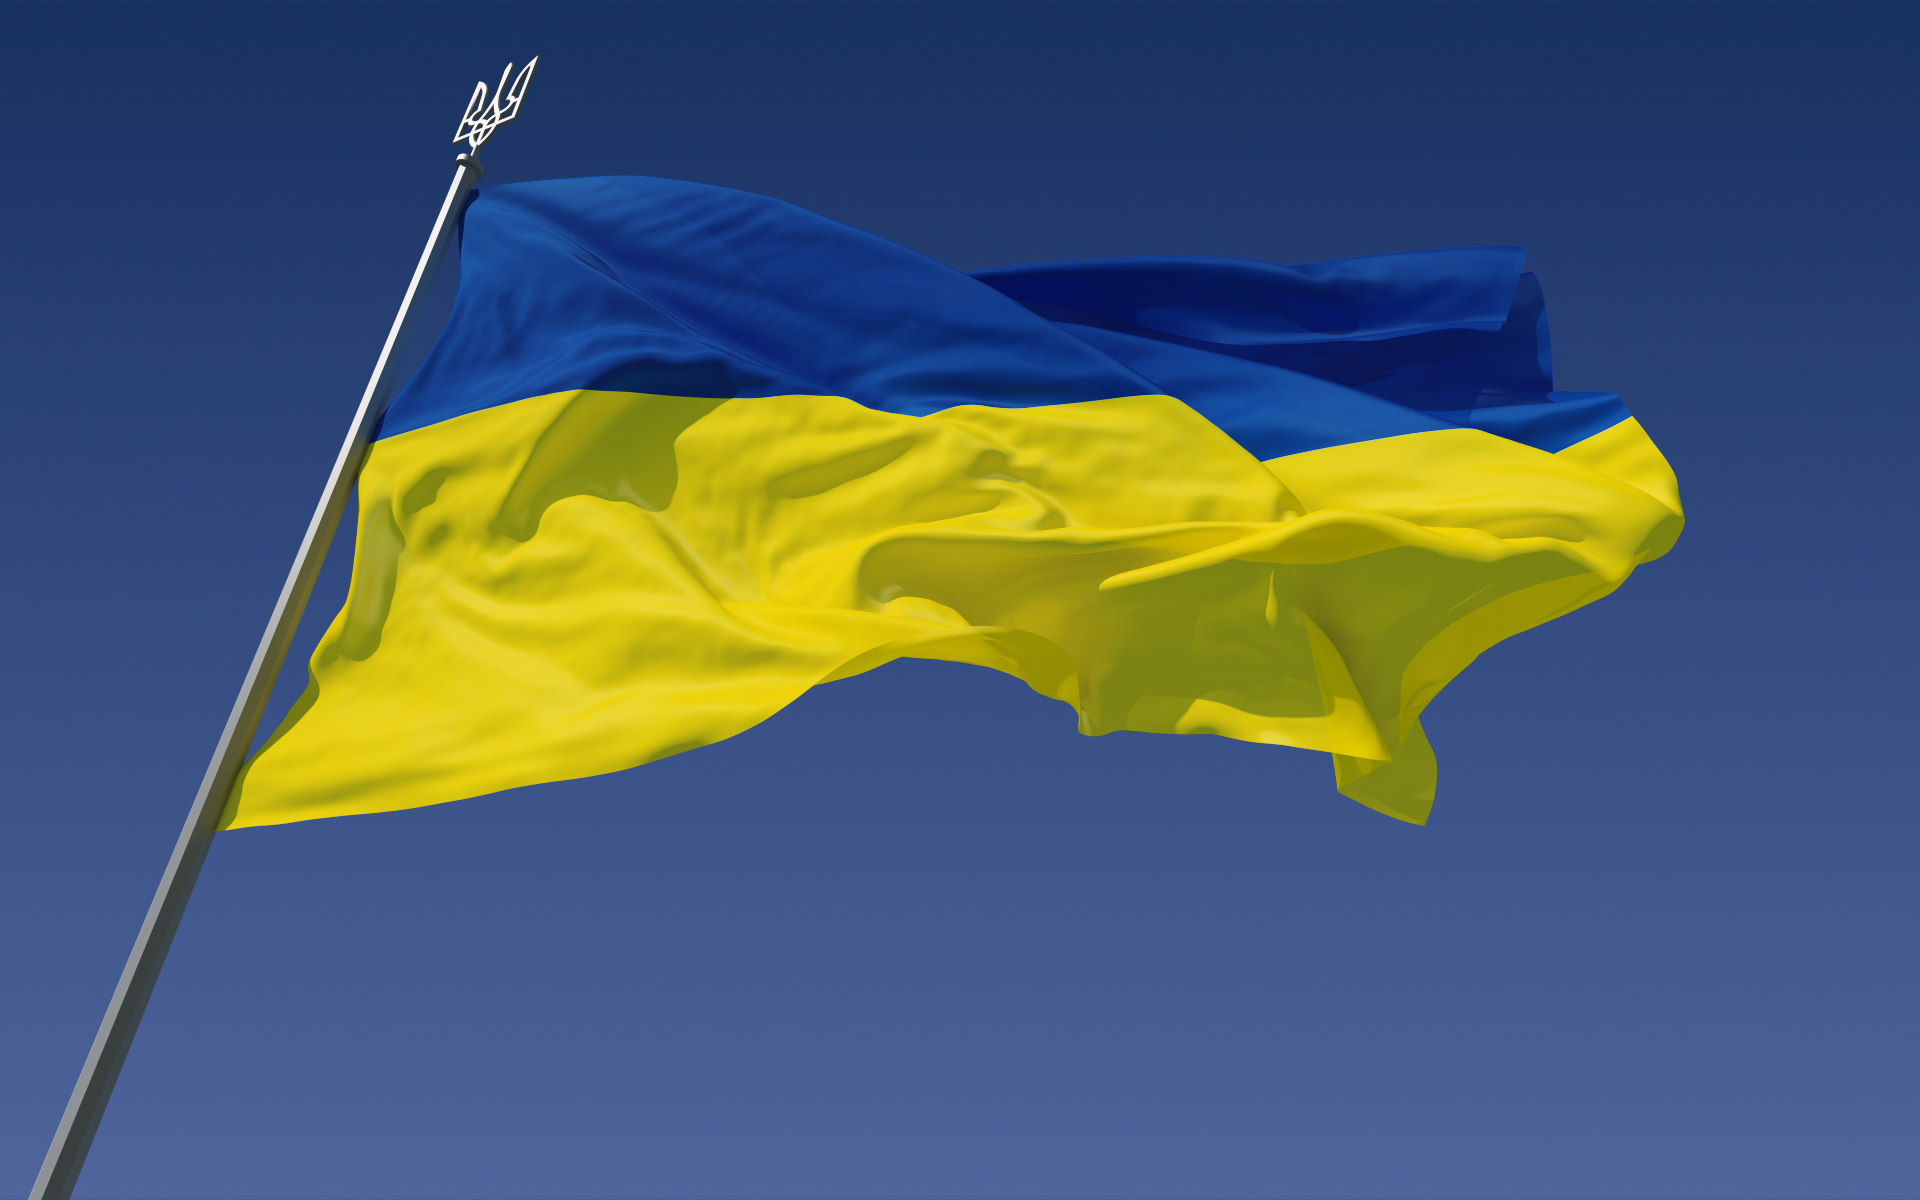 Warsaw Institute jednoczy się z Ukrainą